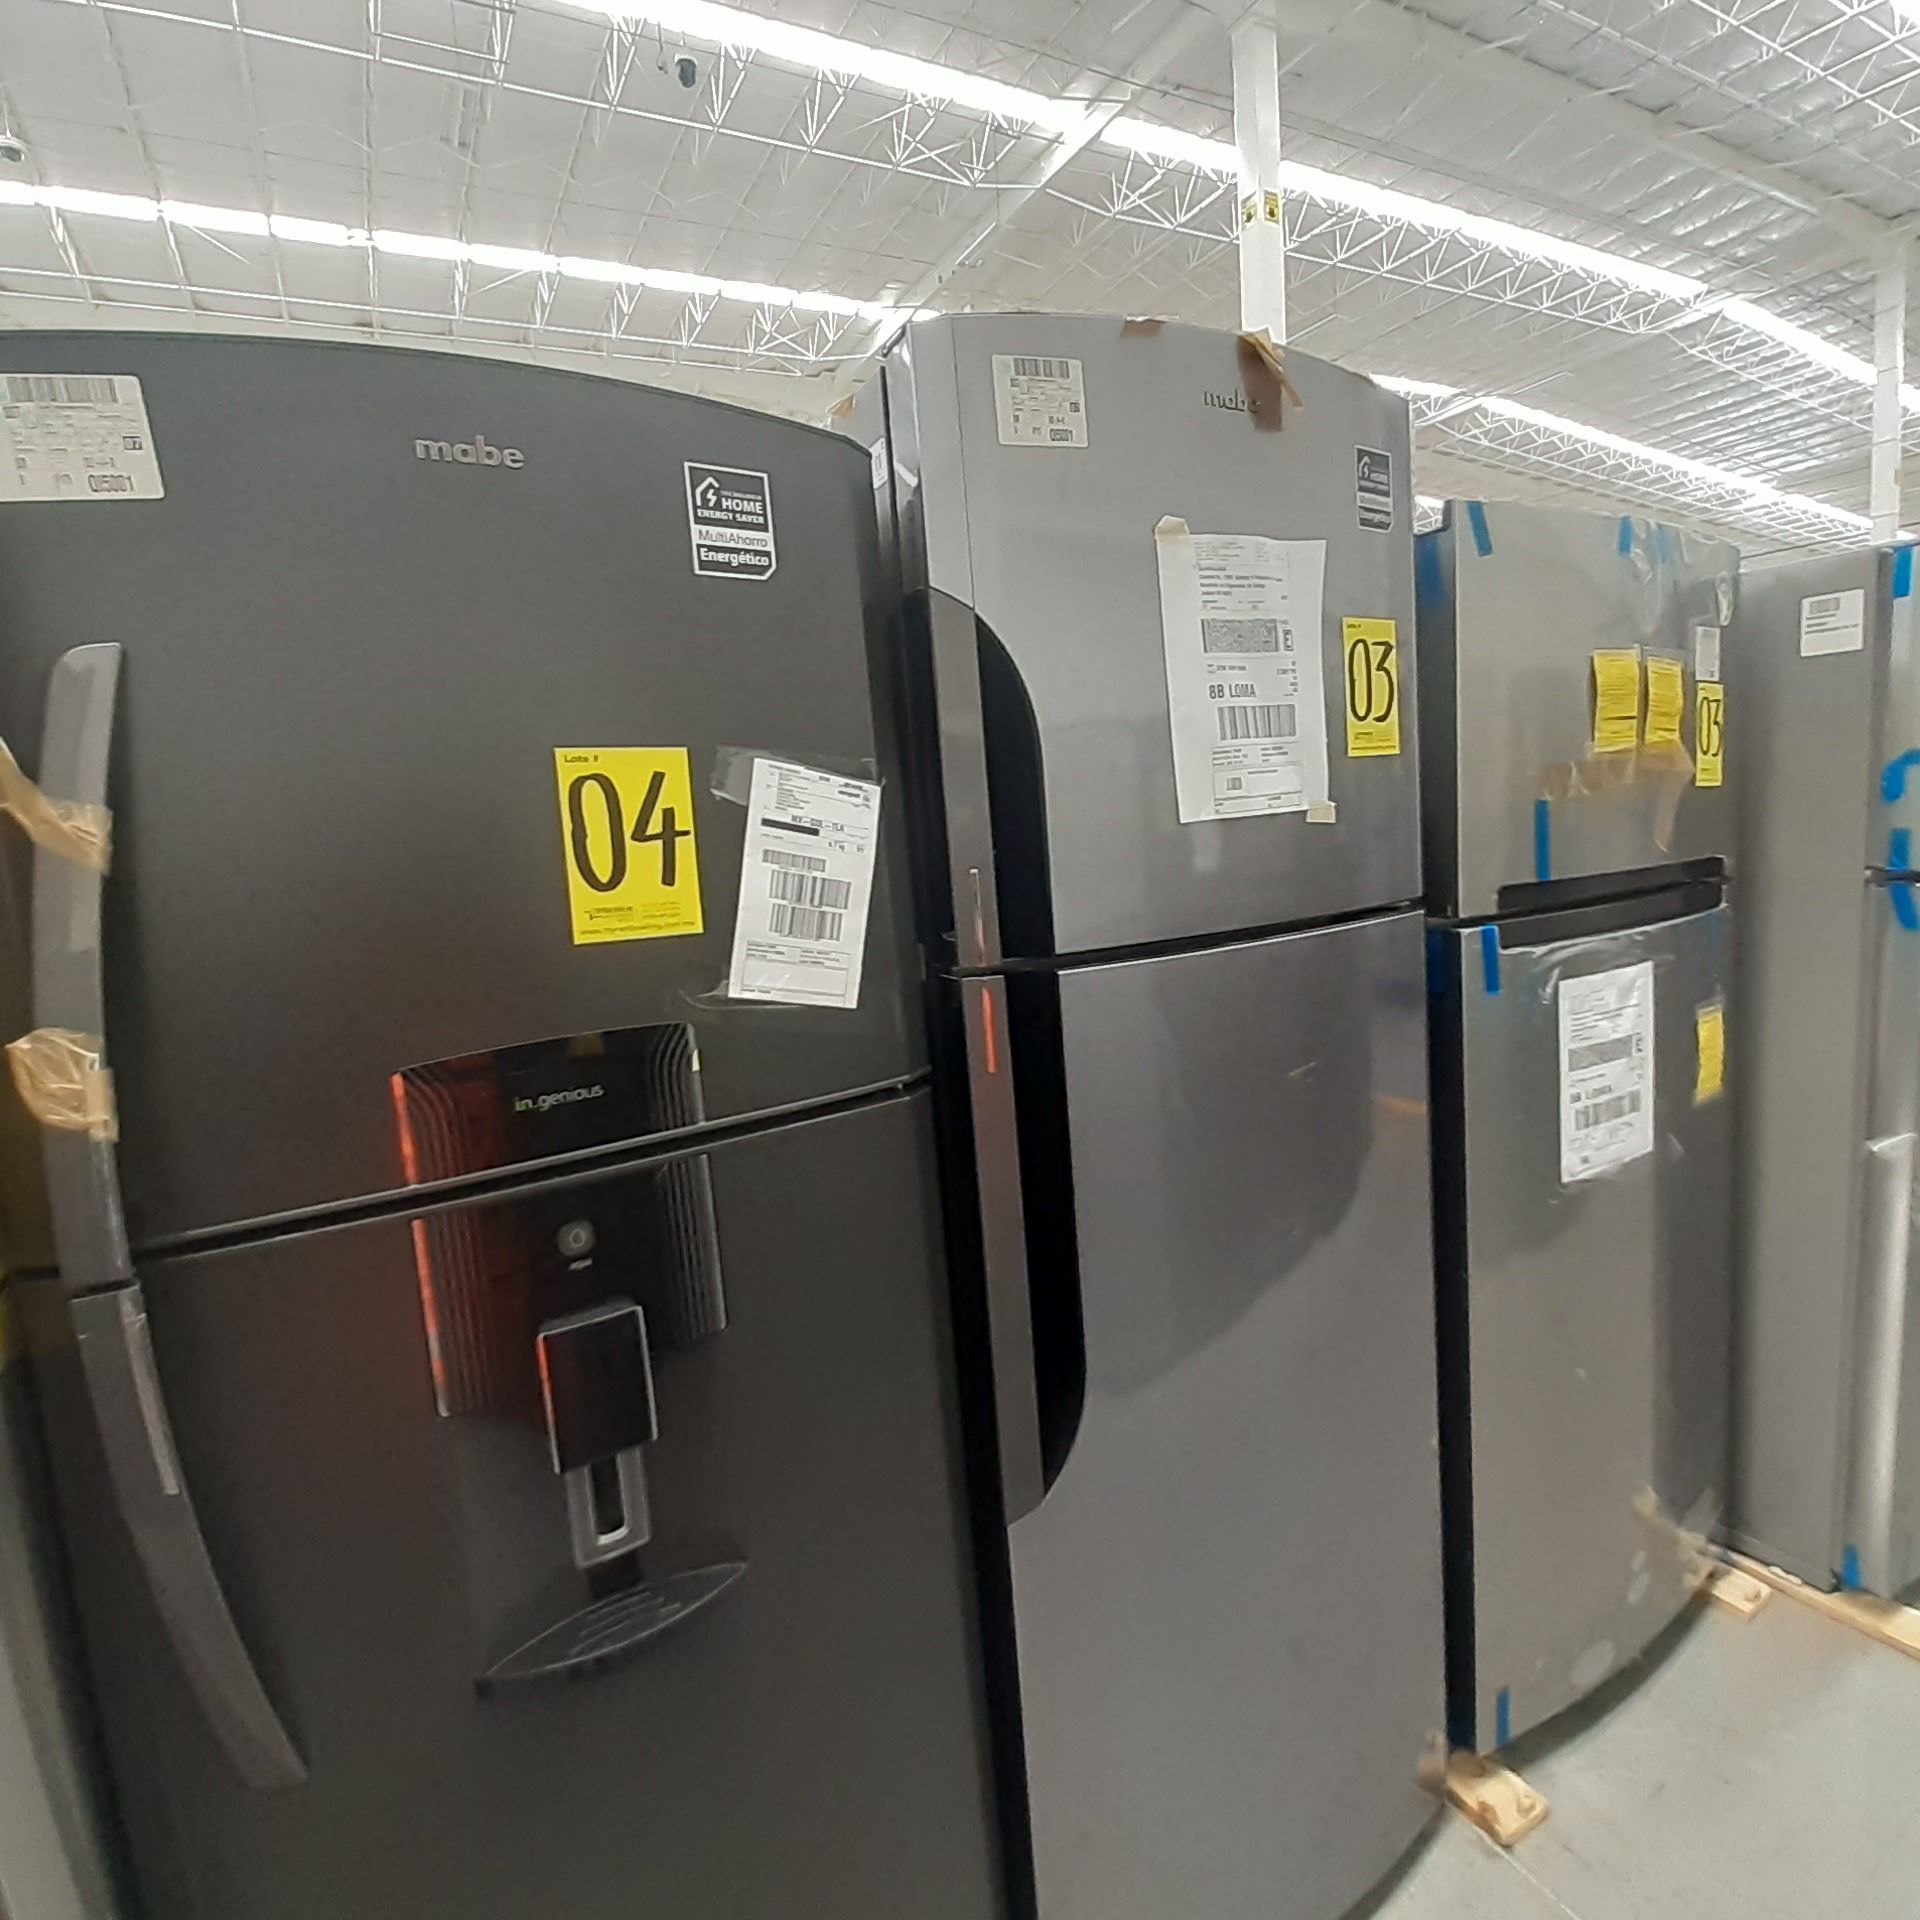 Lote De 2 Refrigeradores: 1 Refrigerador Marca Whirlpool, 1 Refrigerador Marca Mabe, Distintos Model - Image 3 of 22